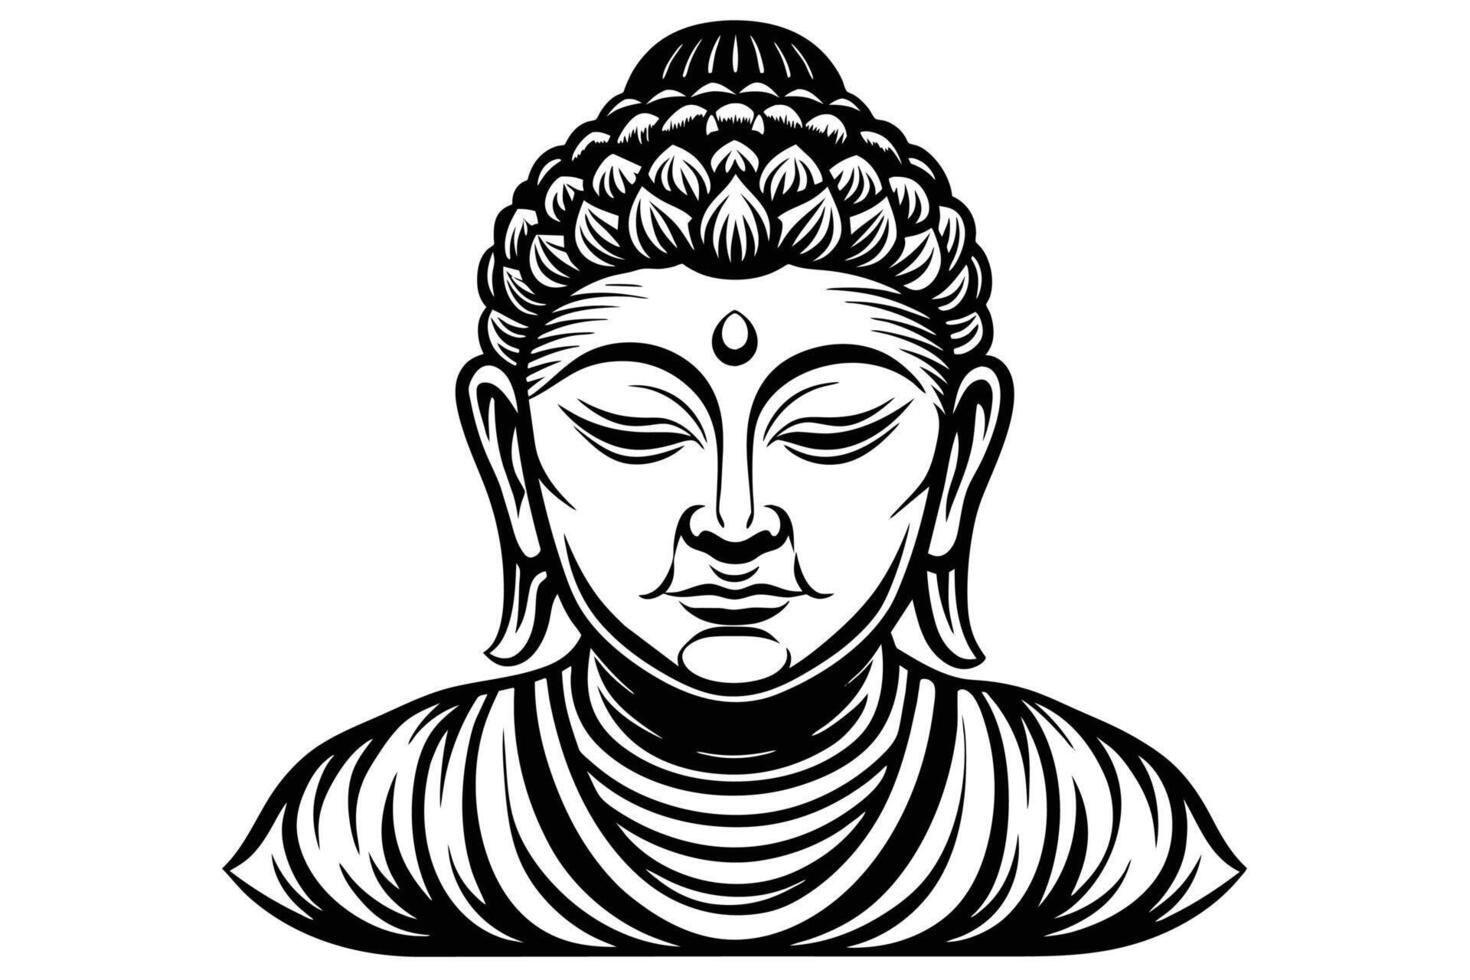 cabeça do Buda. vetor ilustração isolado em branco